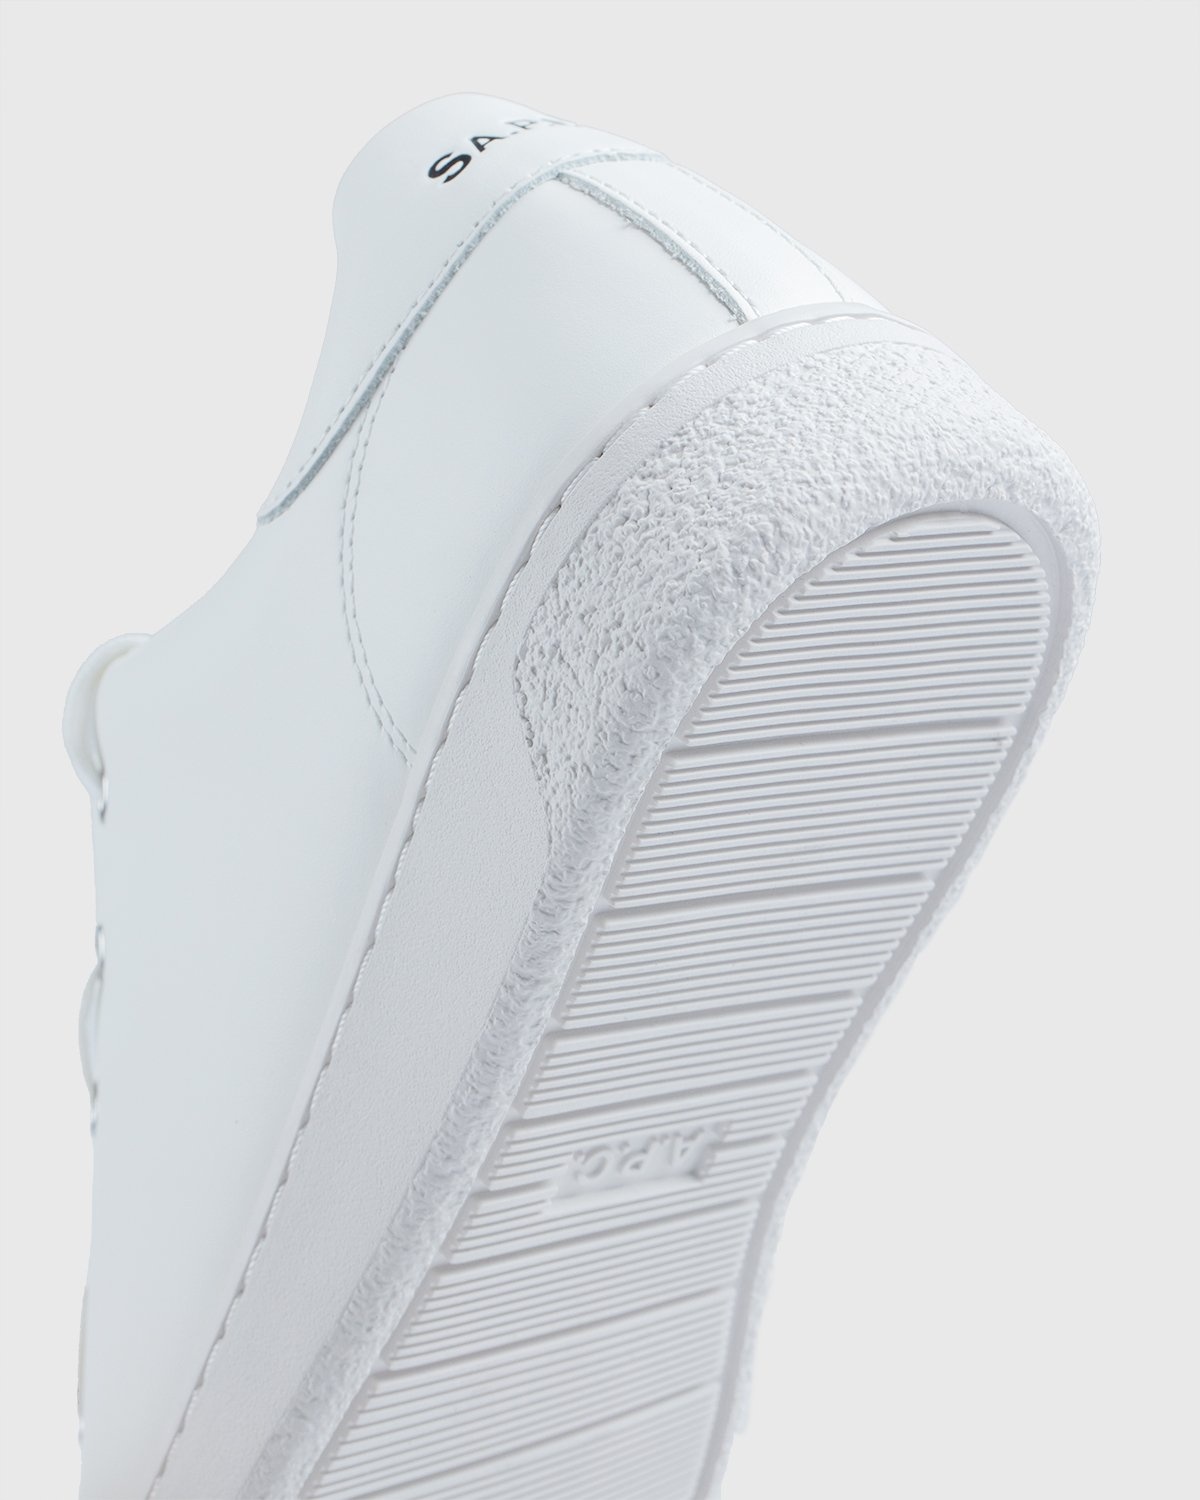 A.P.C. x Sacai – Minimal Sneaker White - Sneakers - White - Image 5